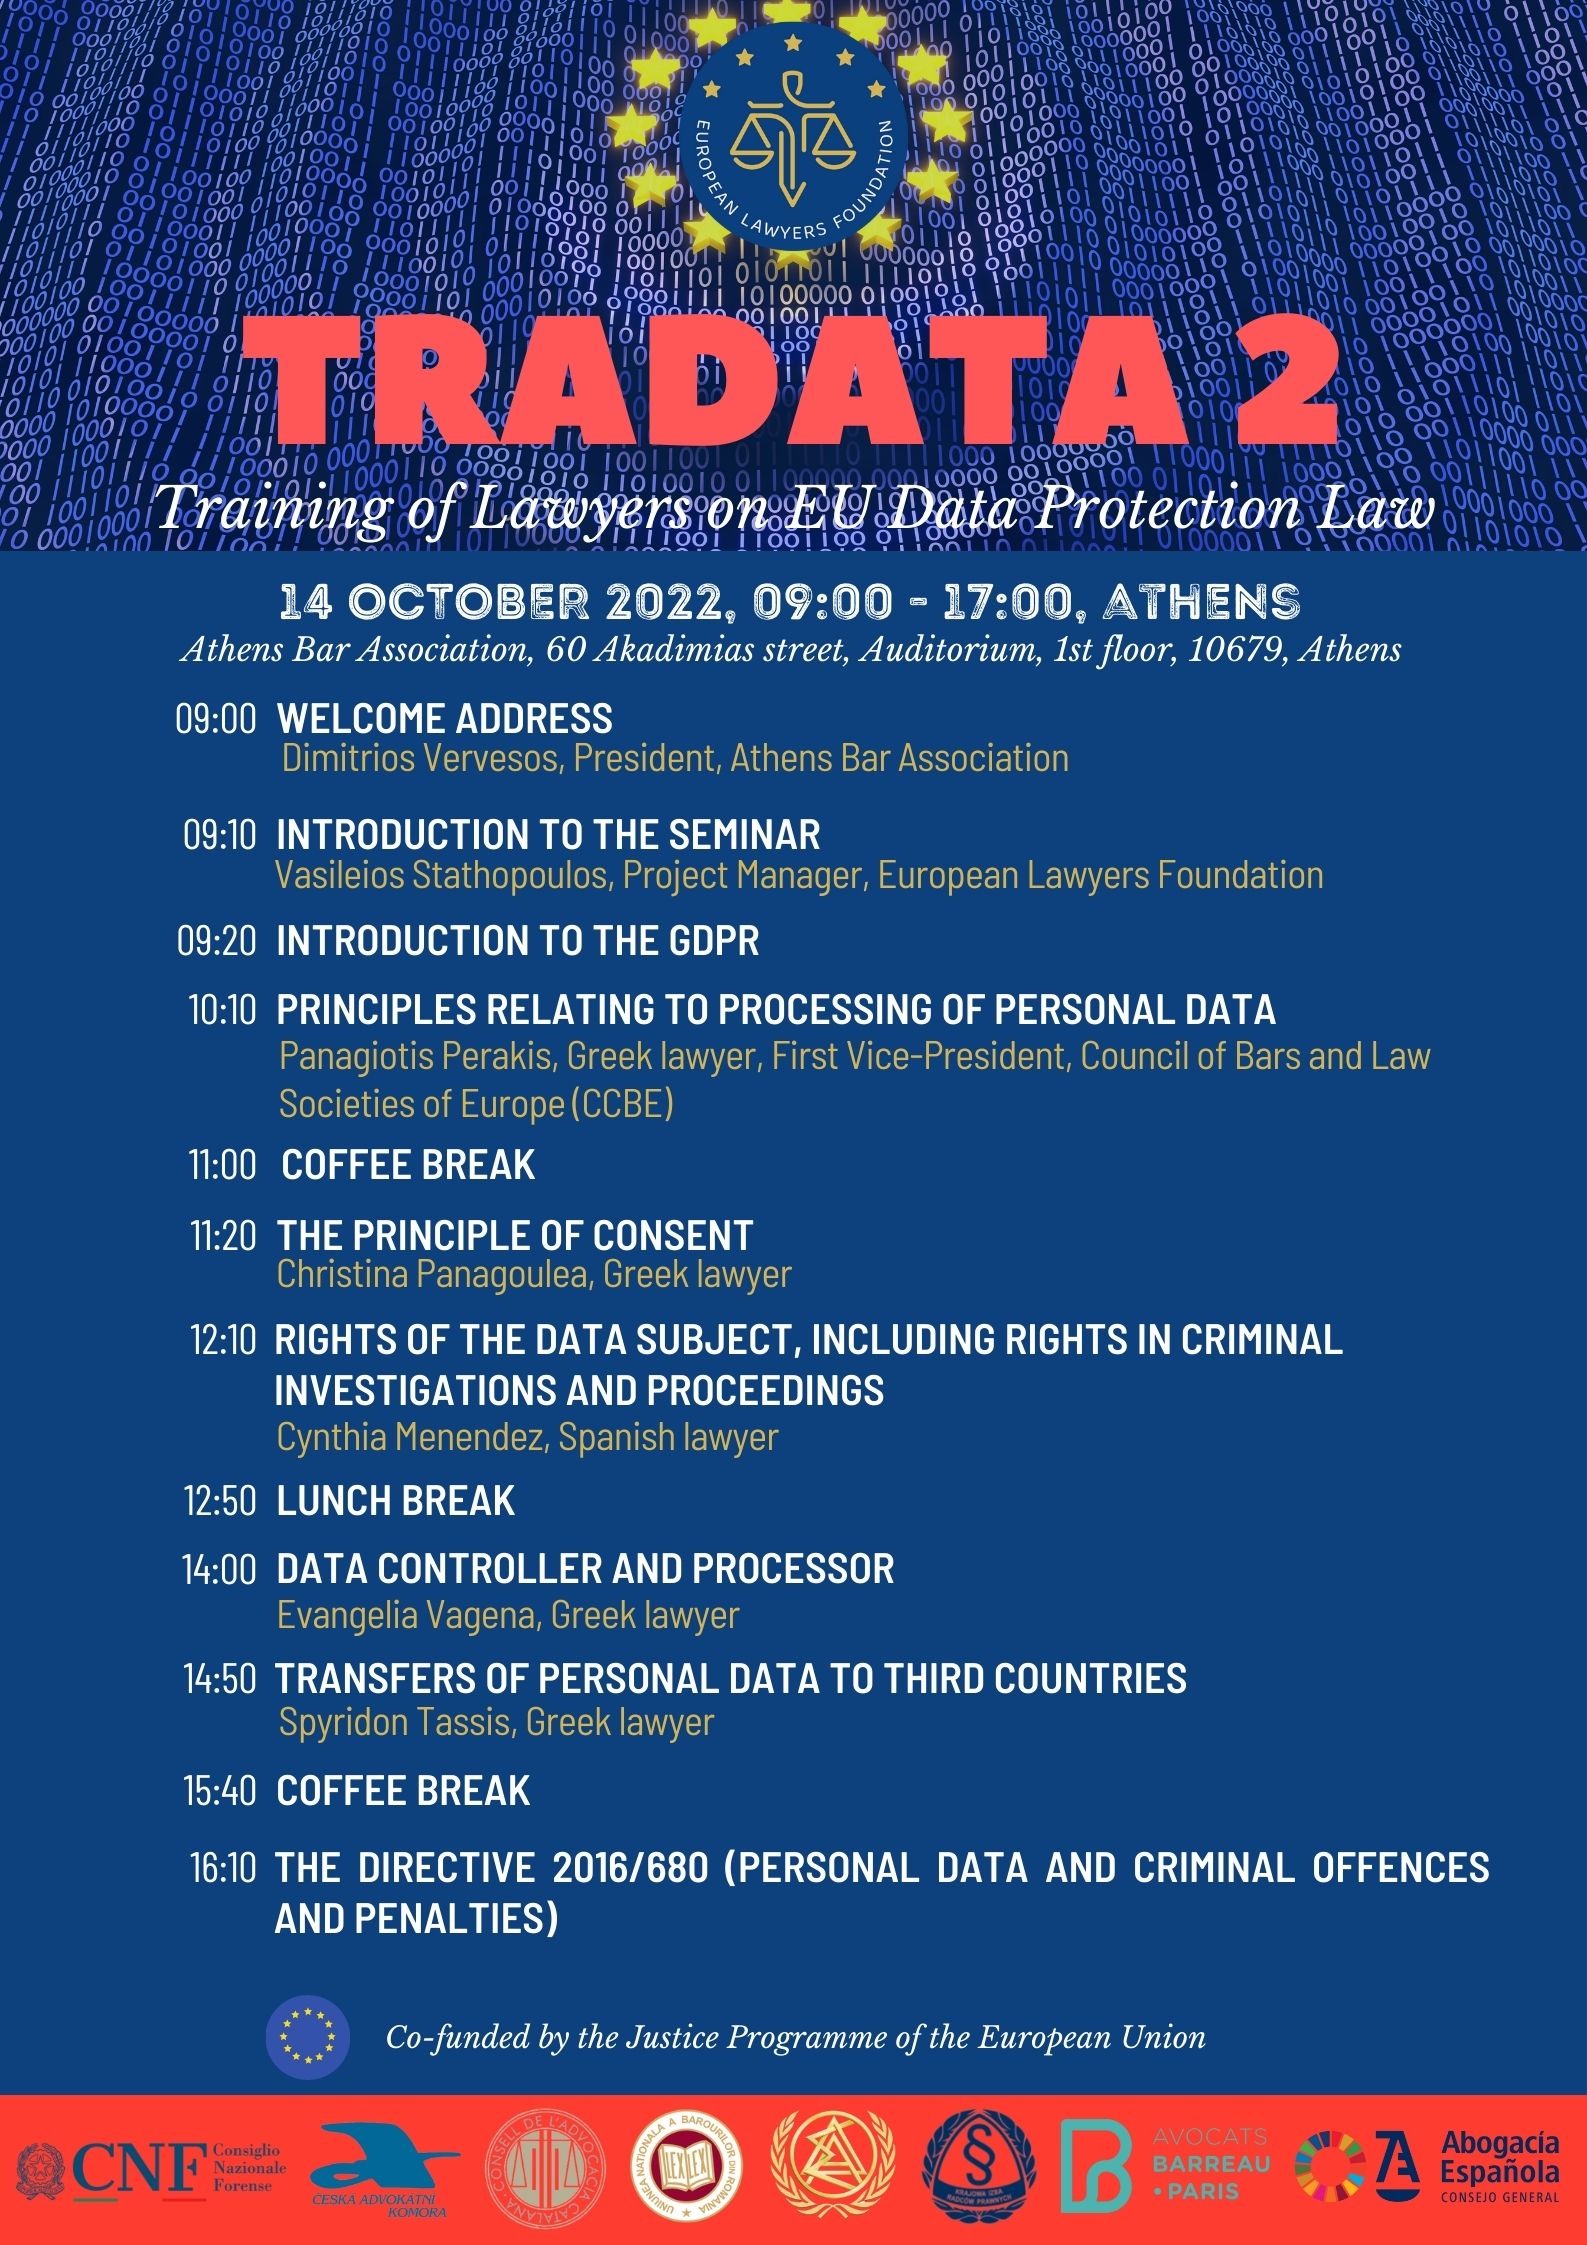 Seminarium w projekcie TRADATA 2 Szkolenie prawników w zakresie prawa ochrony danych w UE 